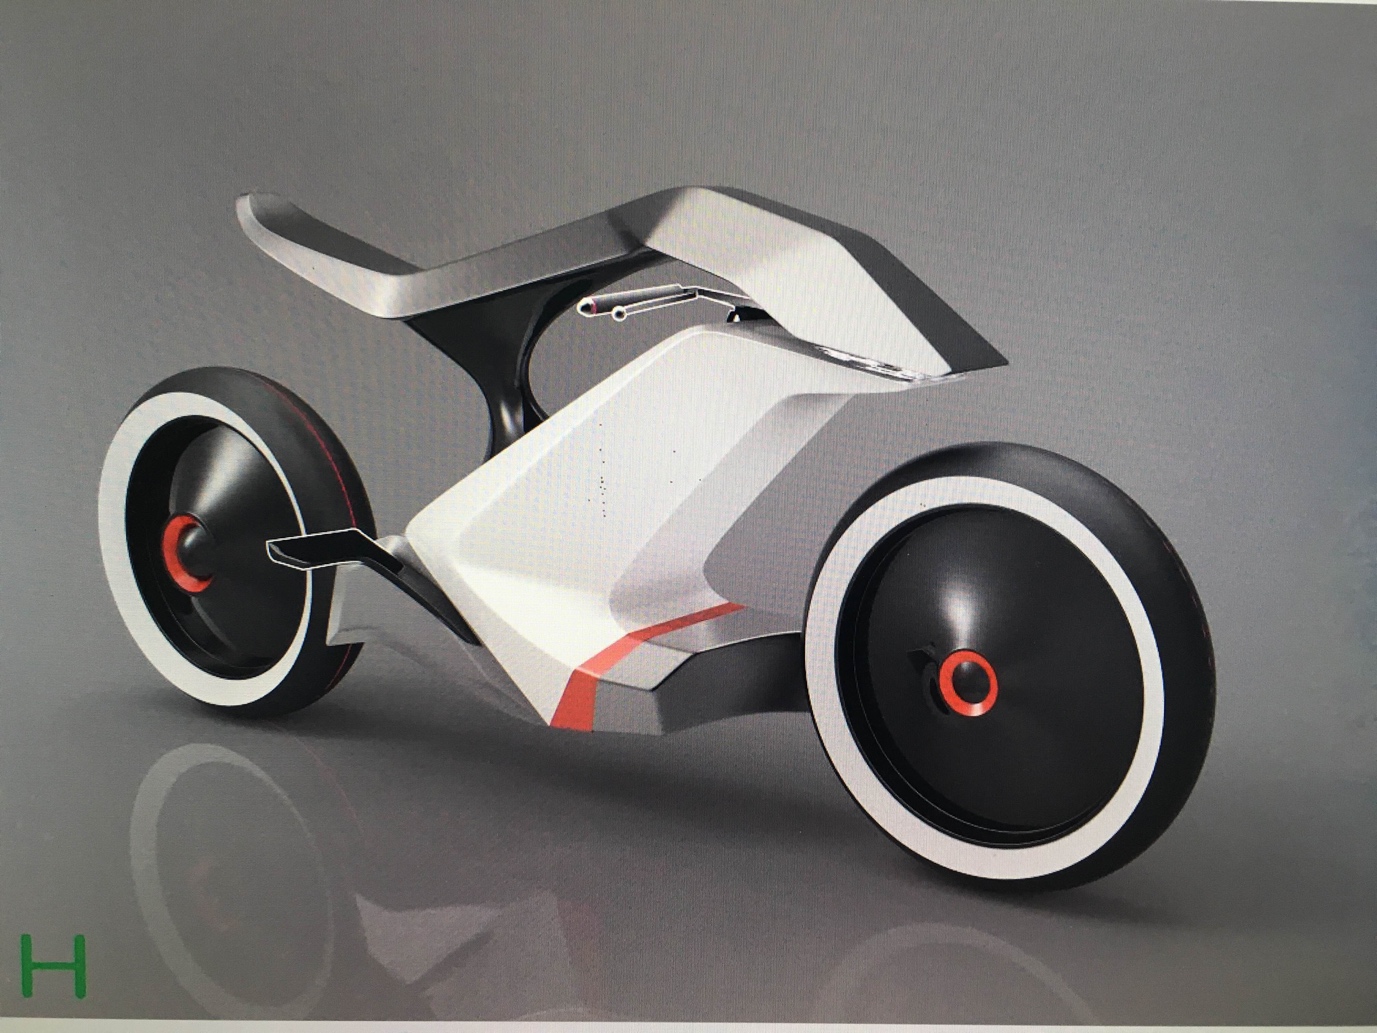 Sản phẩm xe điện mới của Hkbike nhận nhiều ý kiến trái chiều - Ảnh 1.